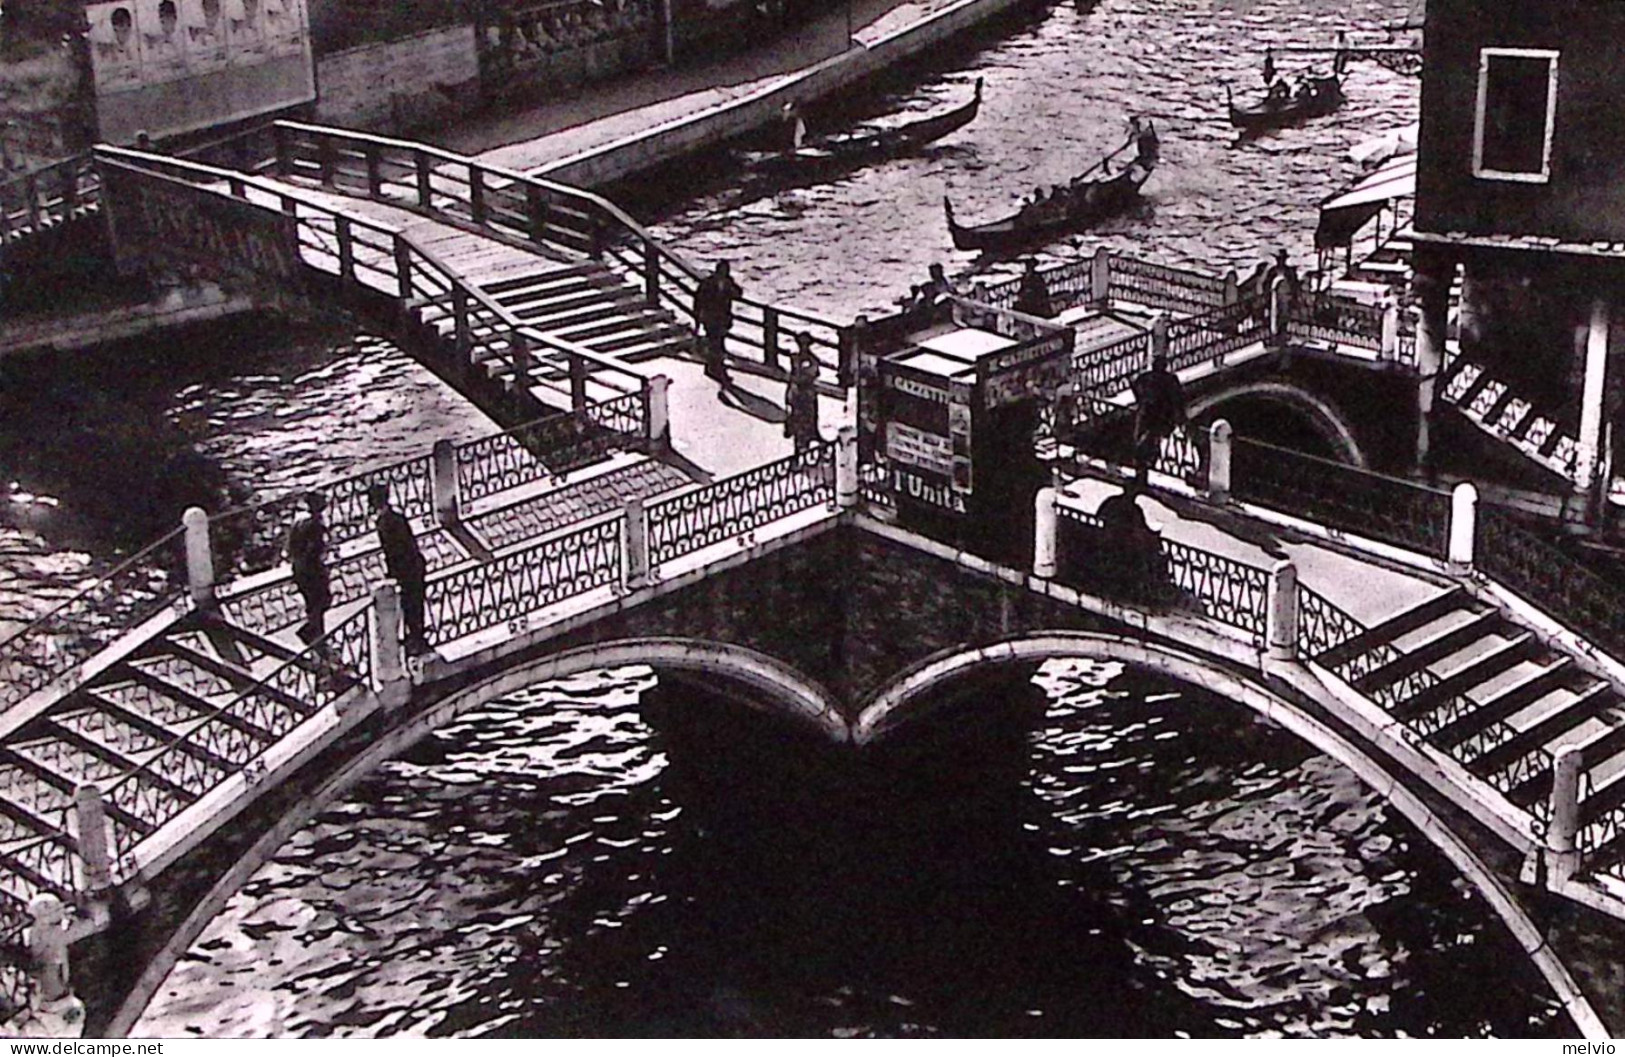 1959-PREOLIMPICA Lire 15 (861) Isolato Su Cartolina (Venezia I Quattro Ponti) Pe - Venezia (Venice)